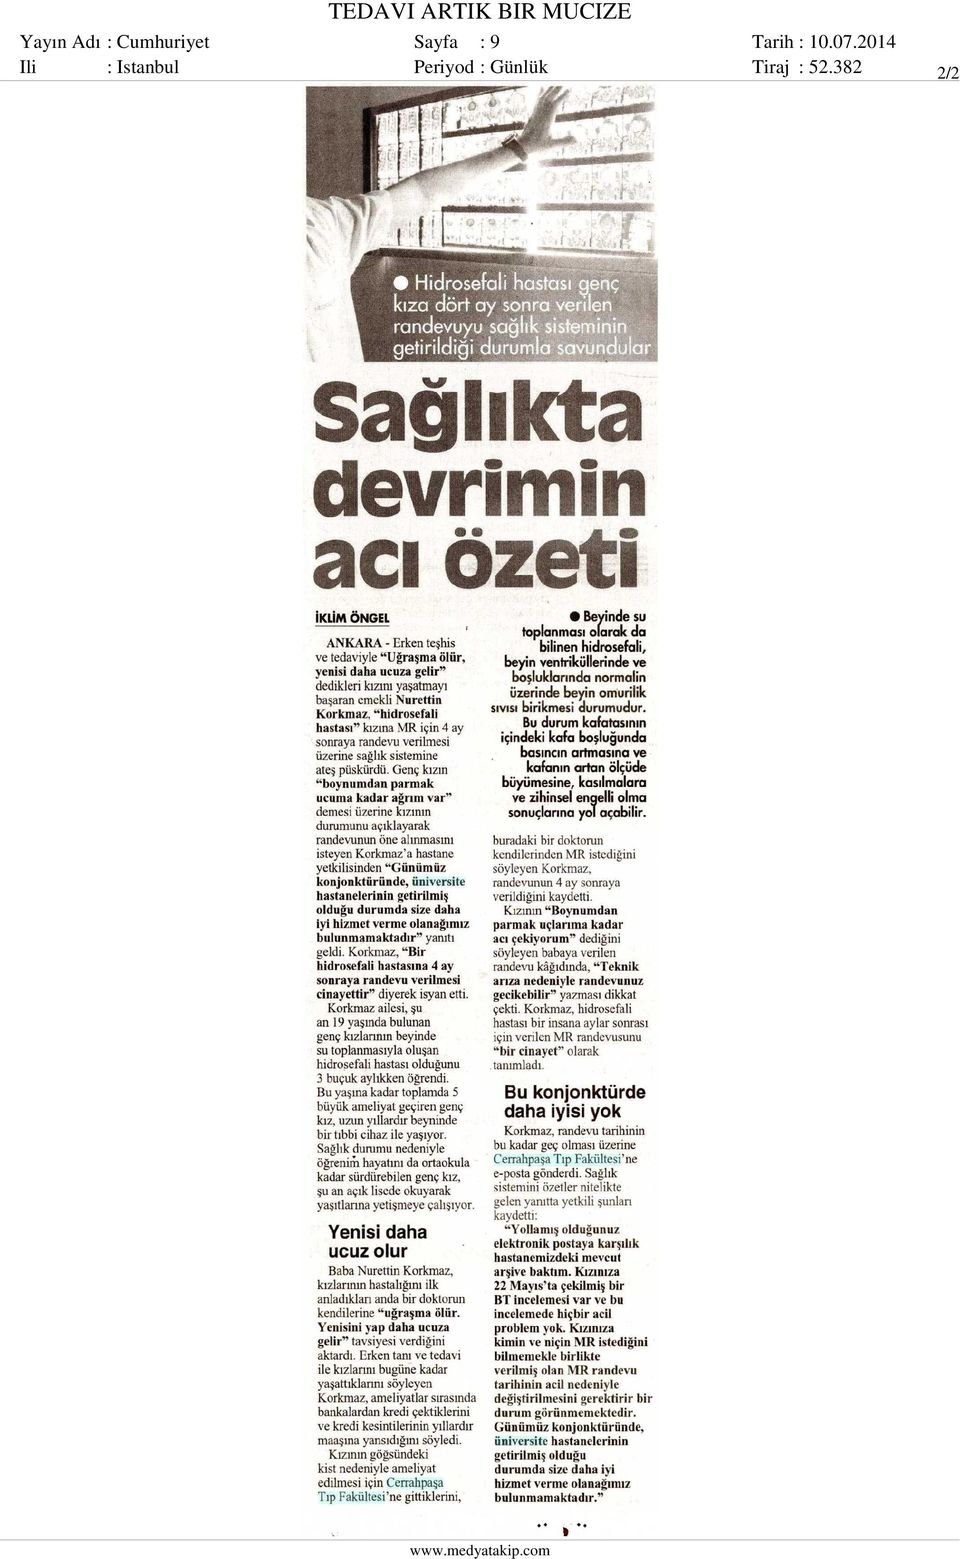 Sayfa : 9 Ili : Istanbul